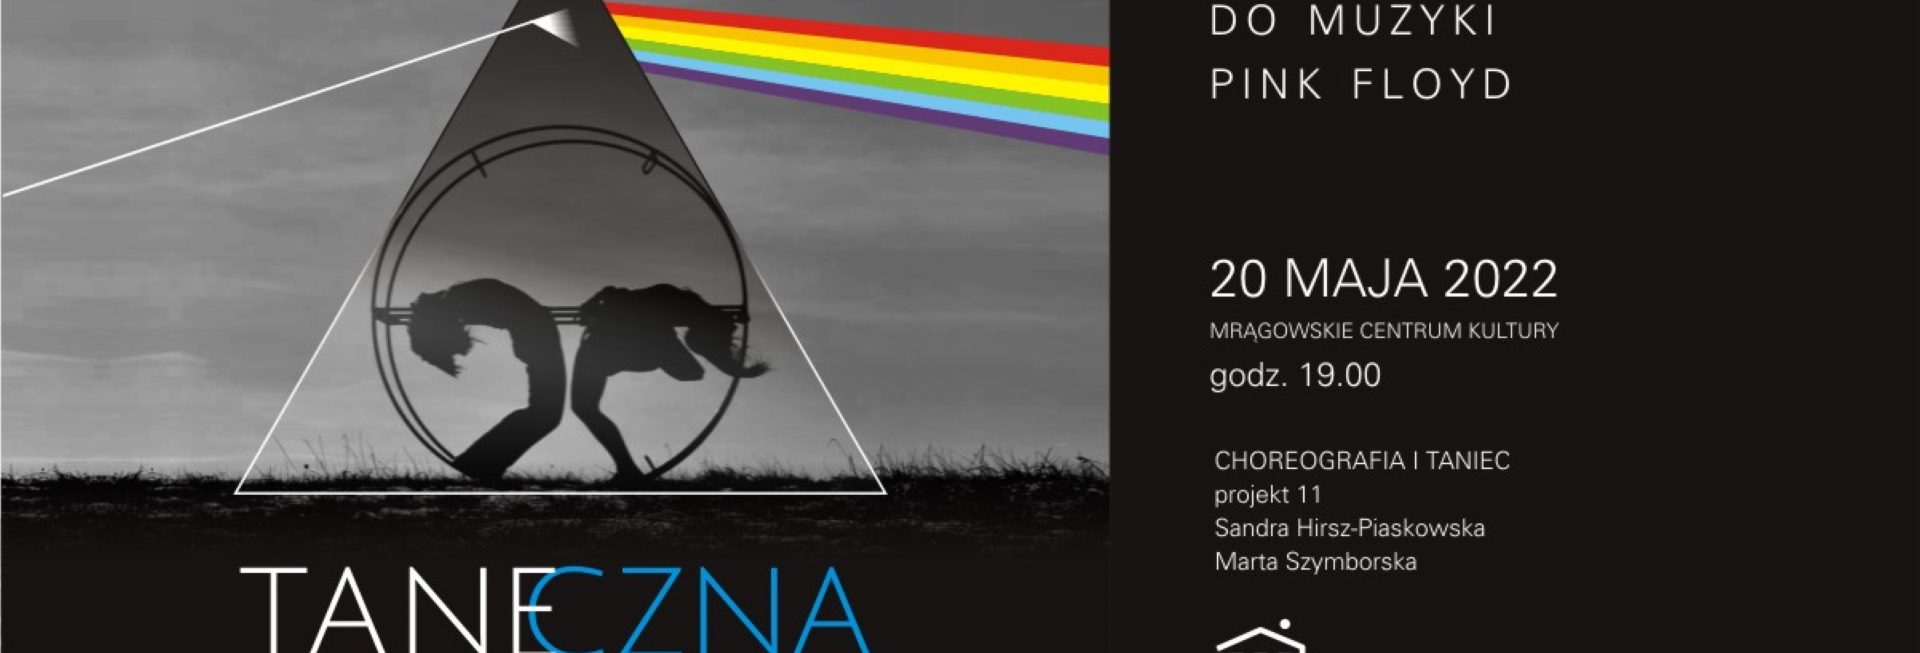 Plakat graficzny zapraszający do Mrągowa na spektakl wizualny do muzyki PINK FLOYD "TANECZNA PODRÓŻ" Mrągowo 2022.